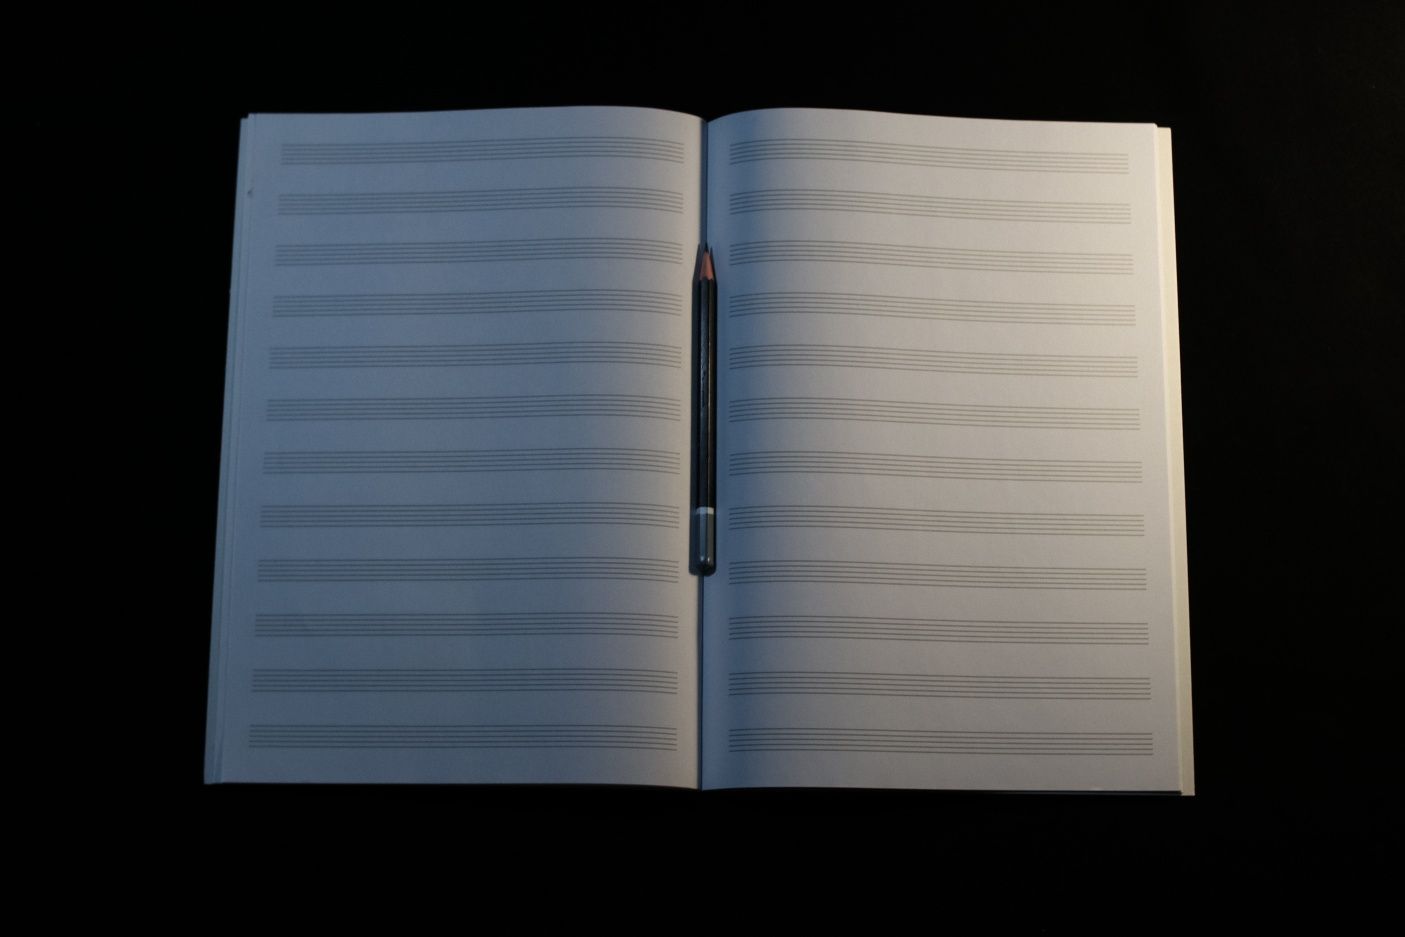 Нотная тетрадь, нотний зошит "music notebook" (тетрадь для нот)